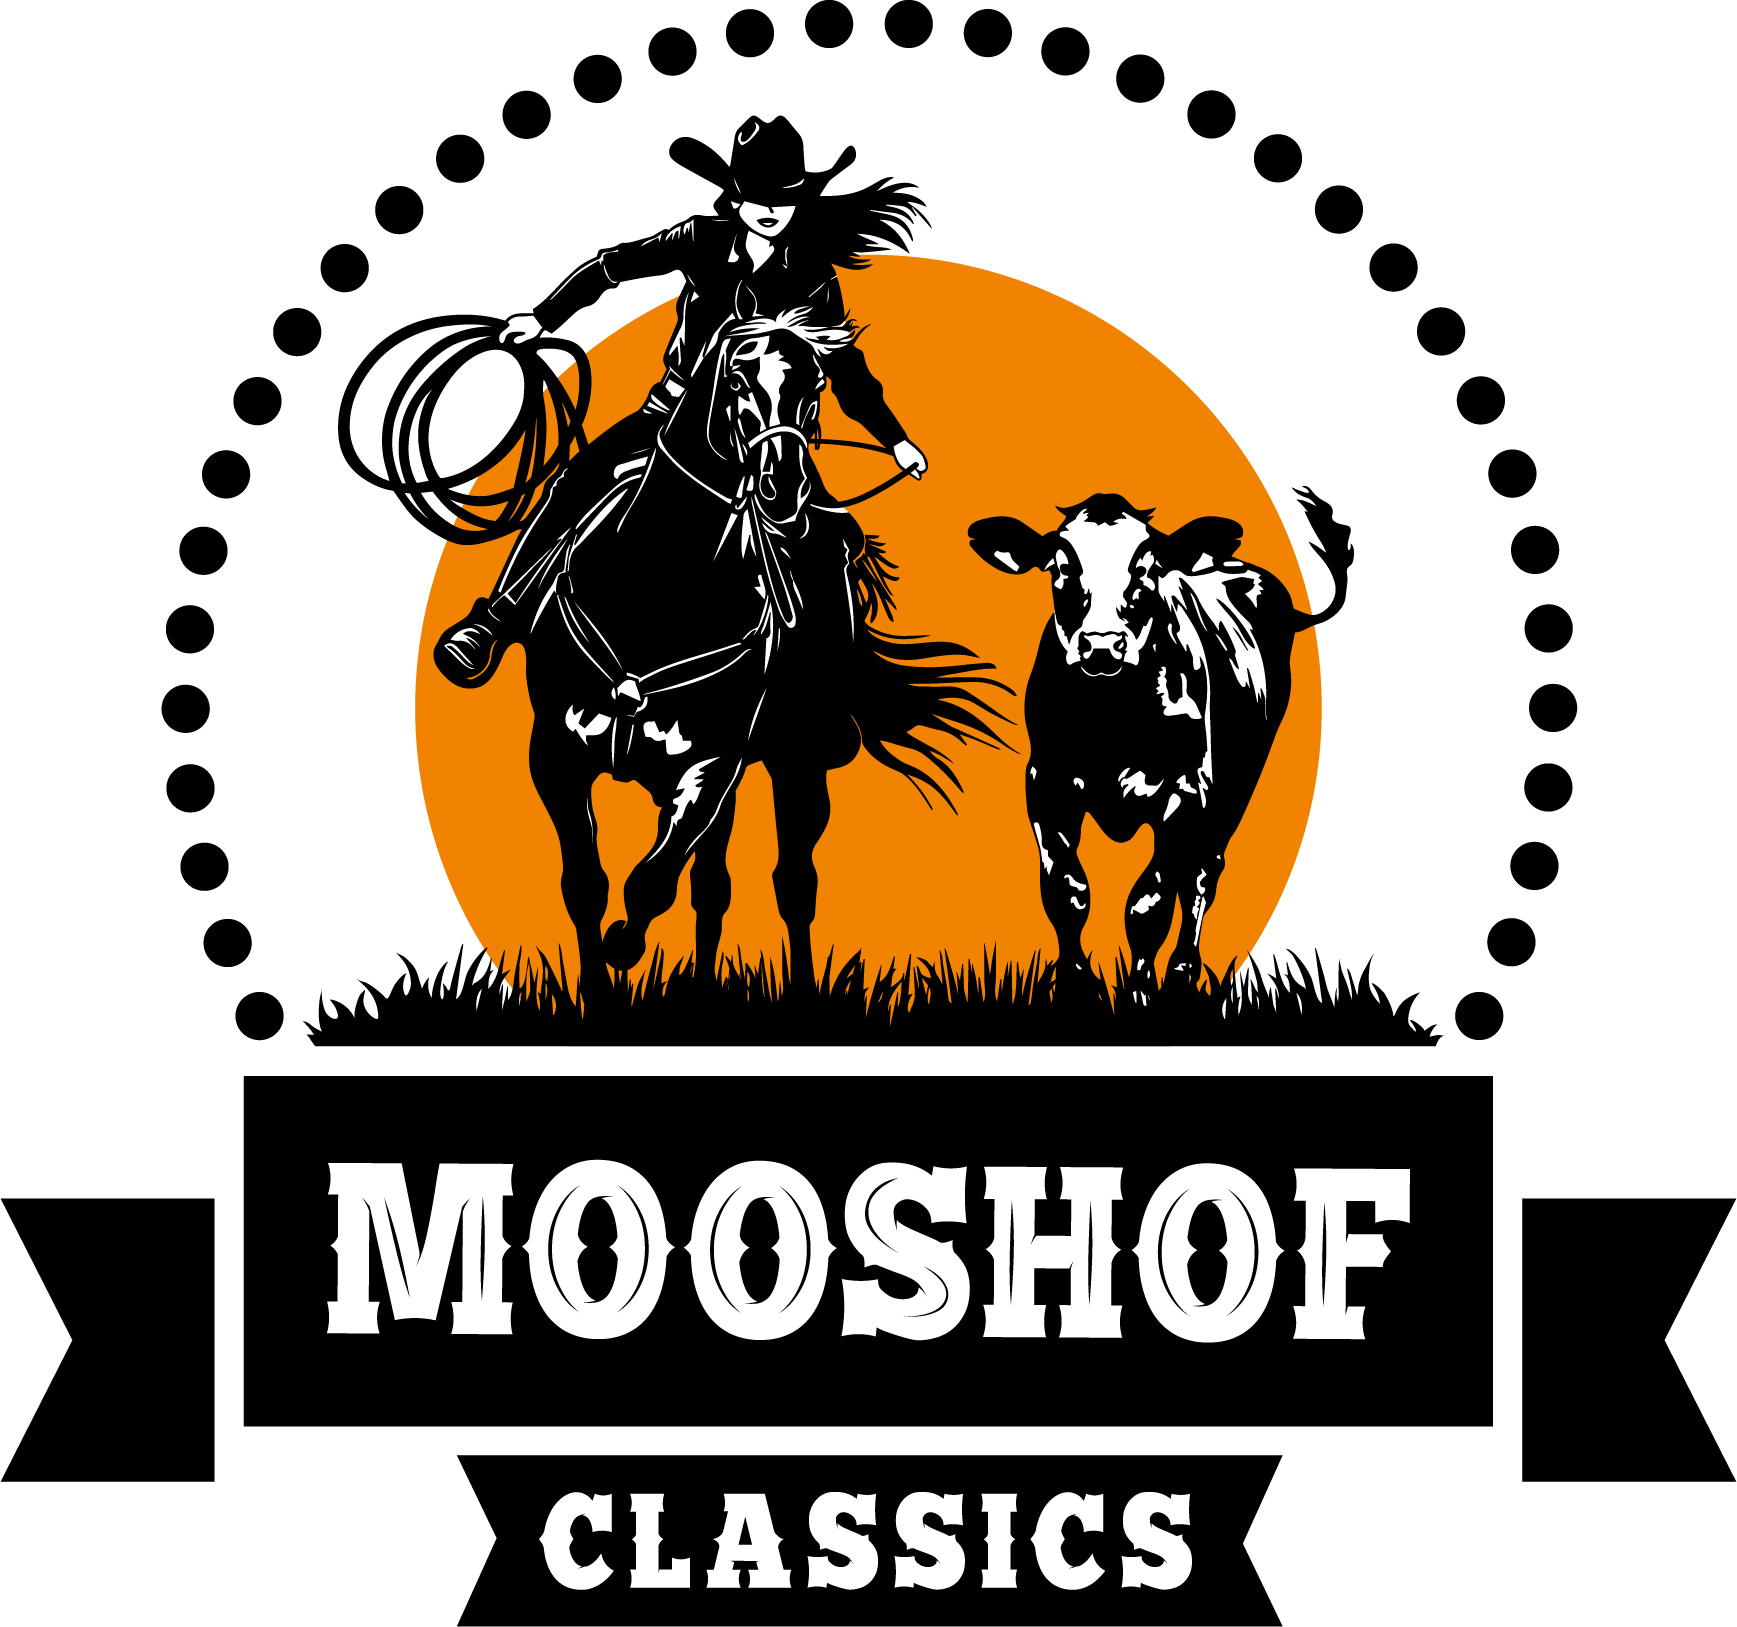 Mooshof Classics